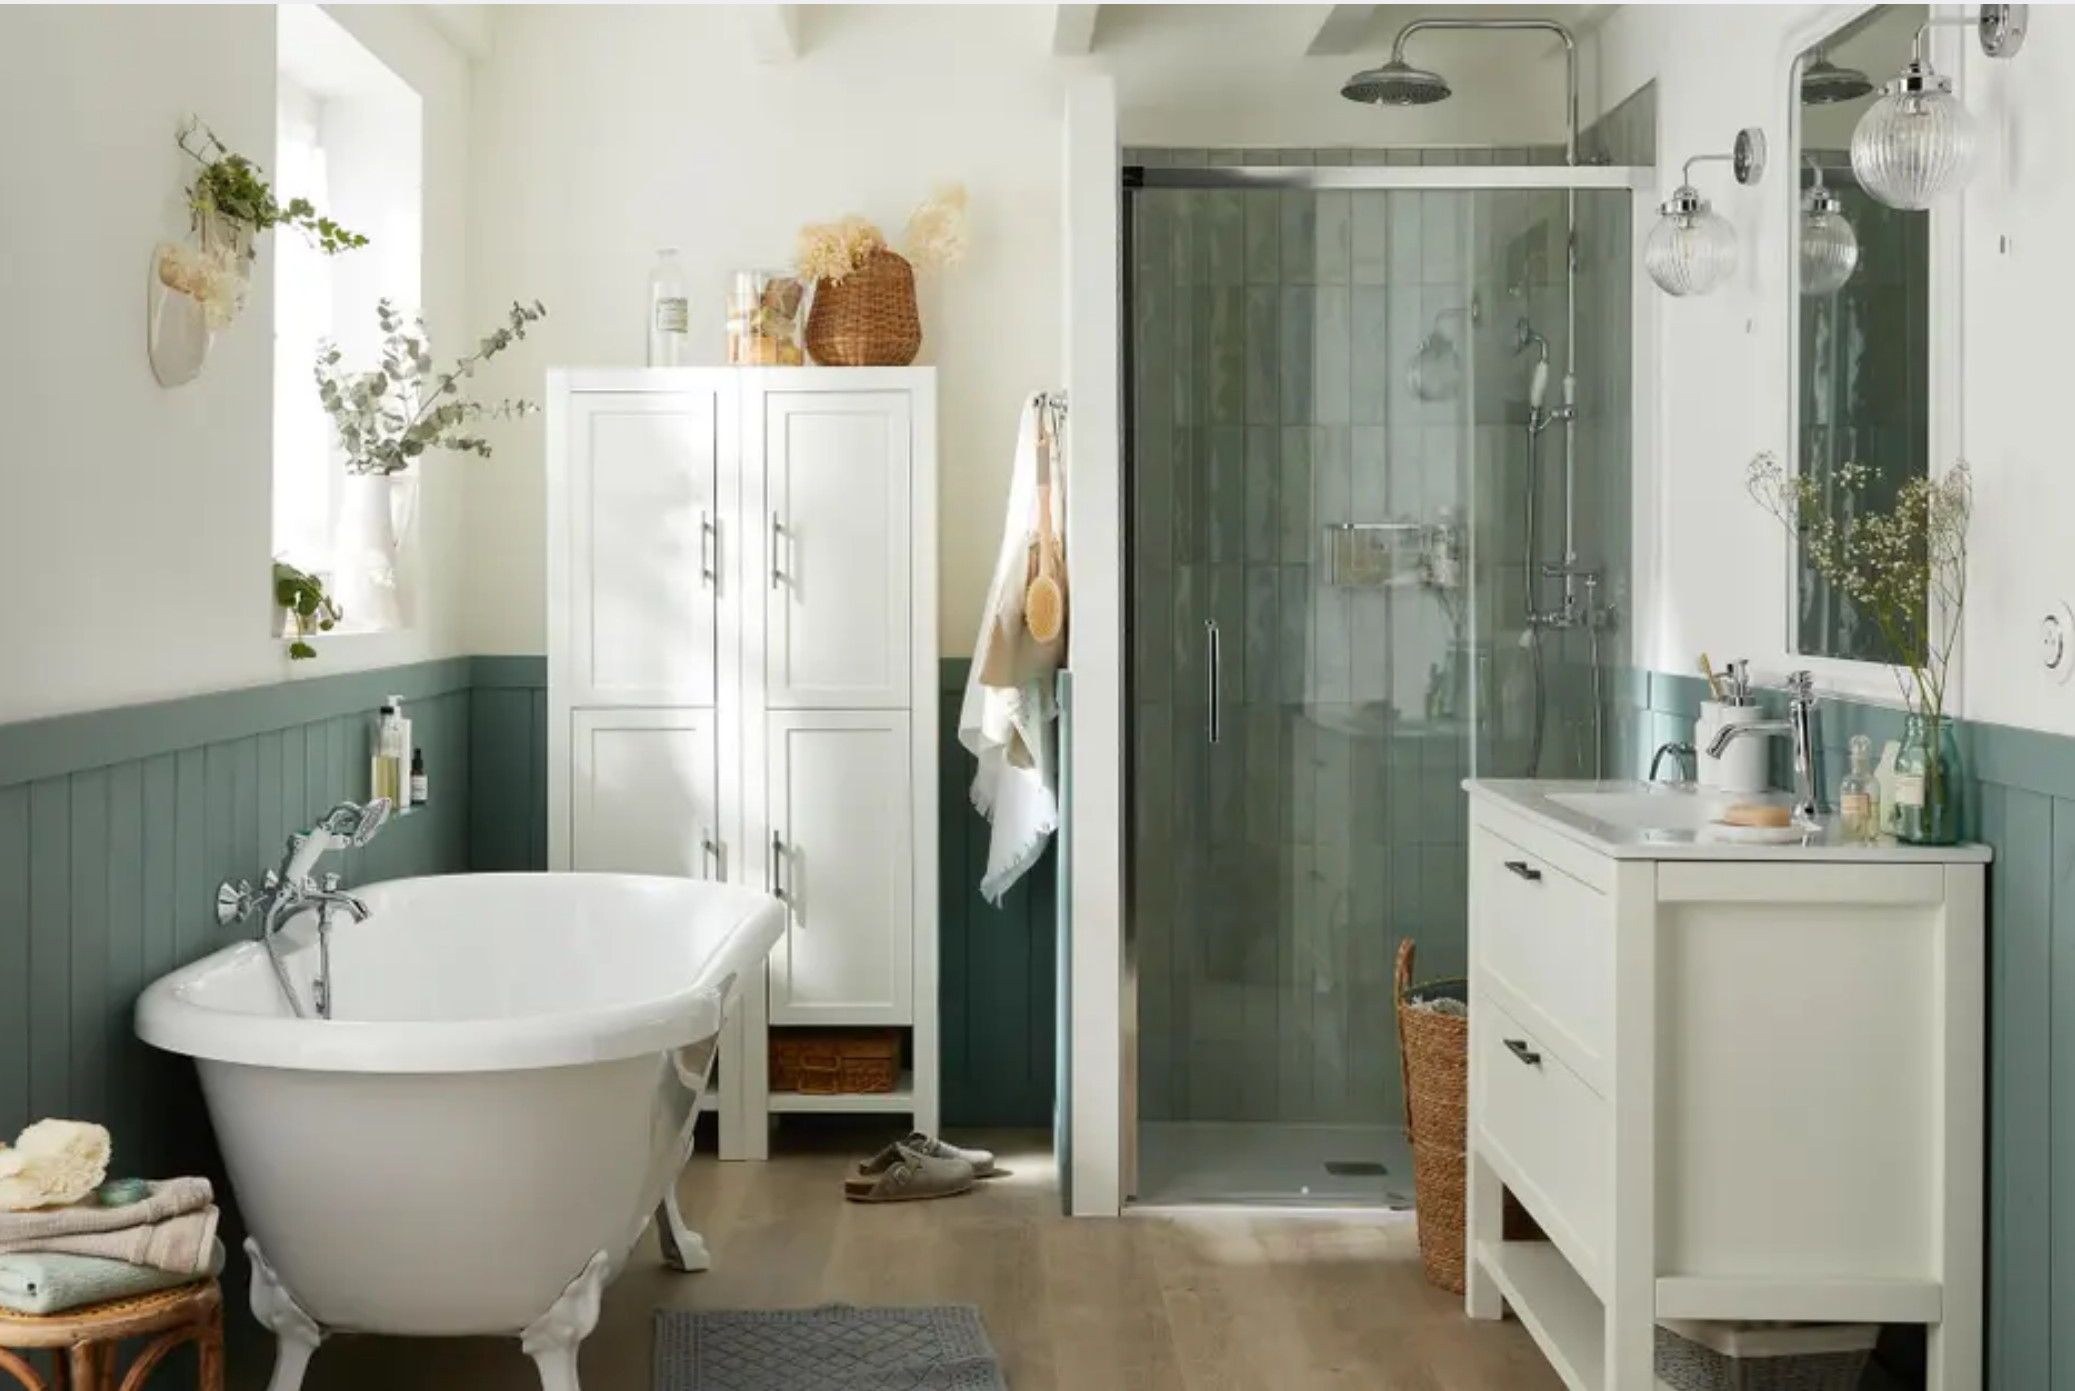 Comment donner un air rétro à une salle de bain moderne ?